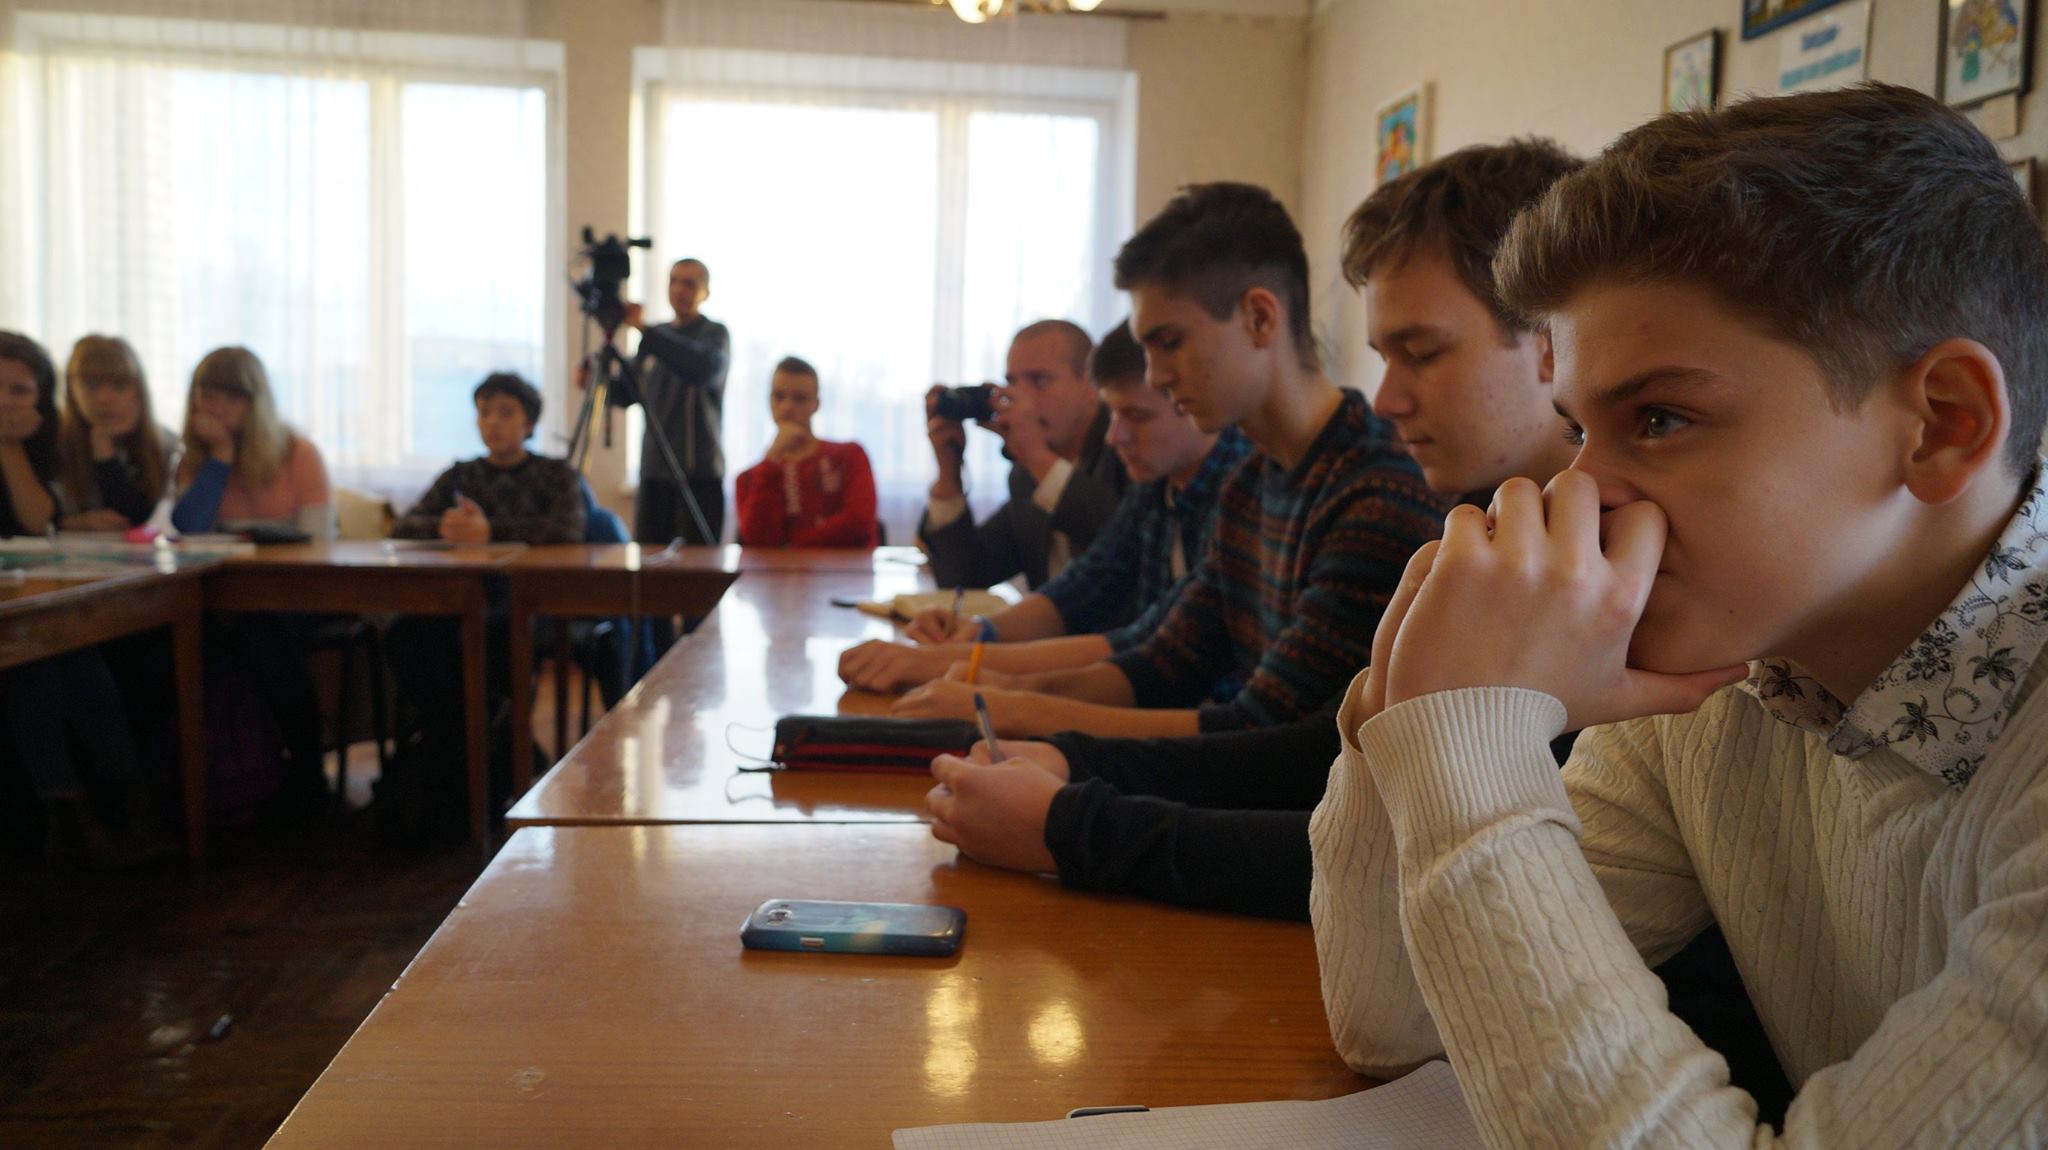 XII Путешествующий фестиваль документального кино про права человека Docudays UA прибыл в Бердянск - картинка 2